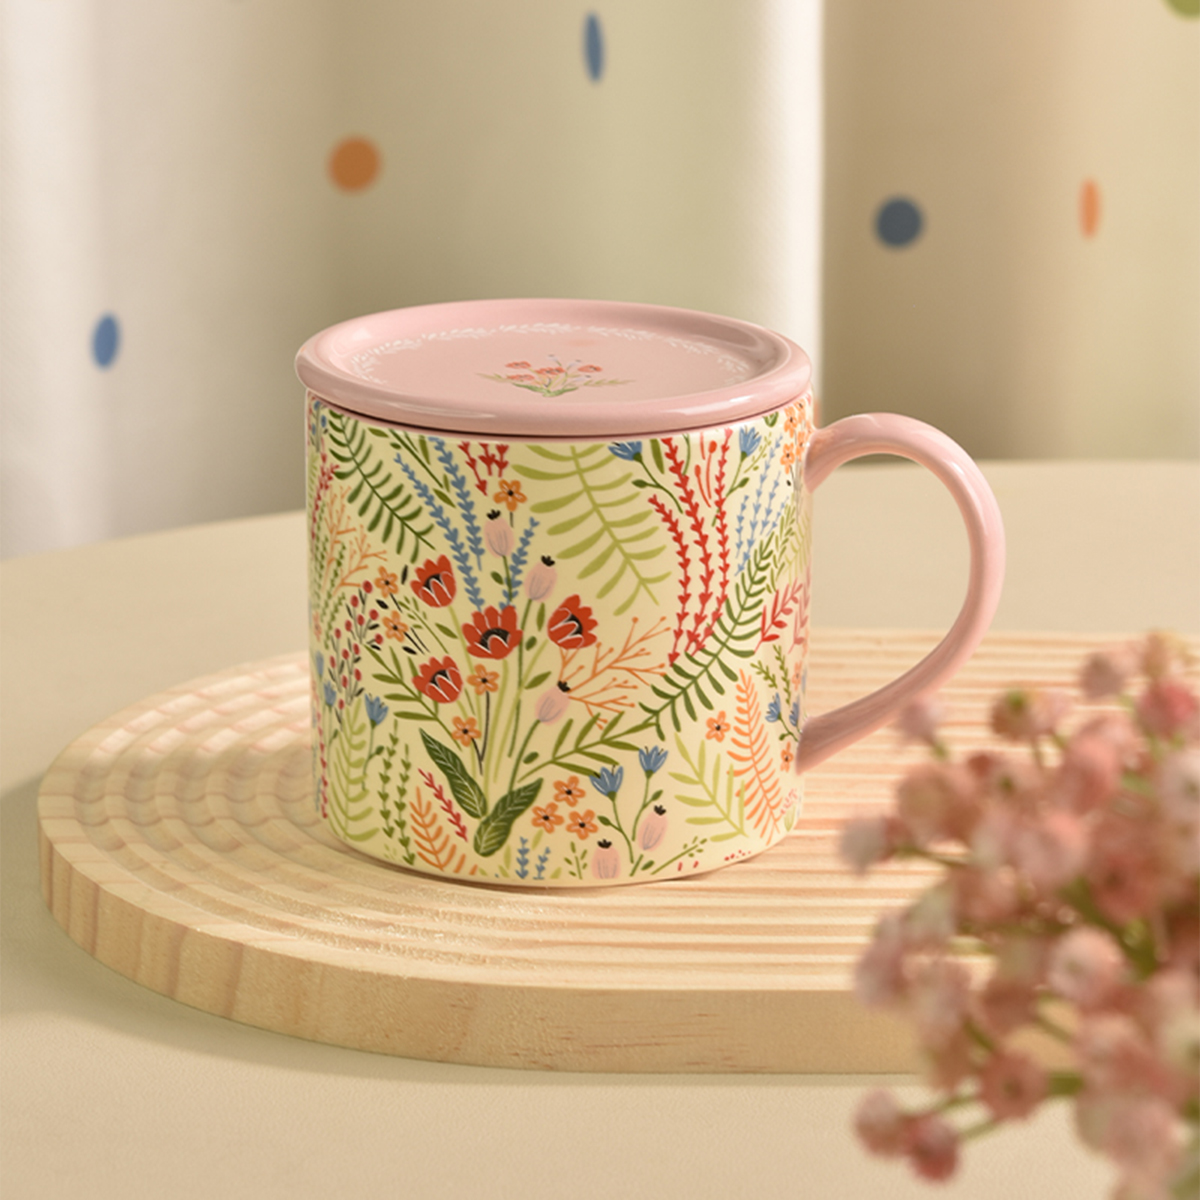 PiaJi 花卉马克杯女生陶瓷咖啡情侣杯带盖喝水杯家用早餐杯